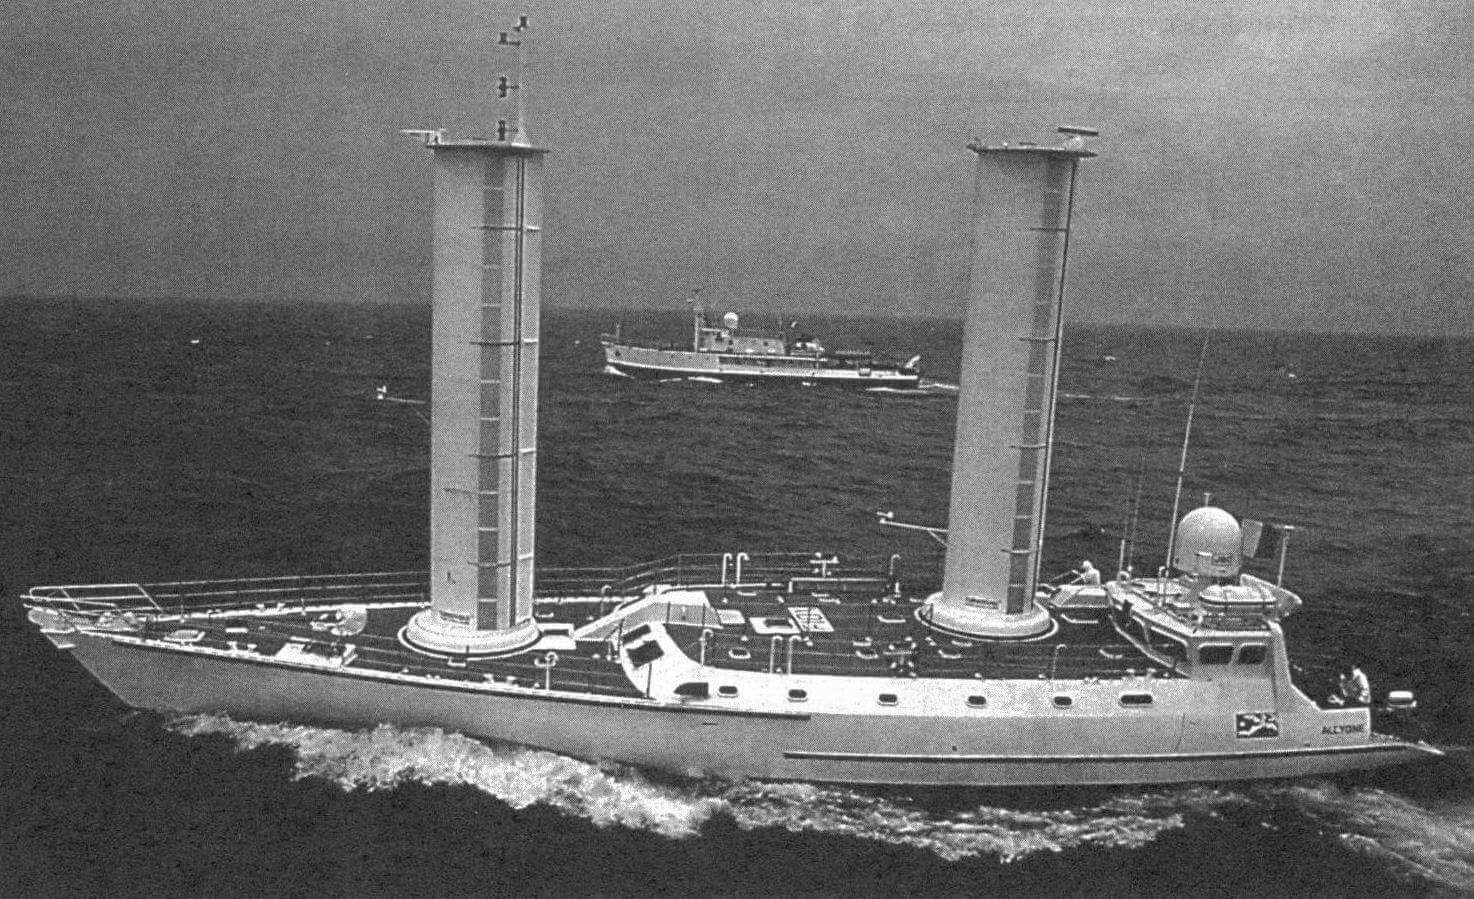 «Алкиона» (фр. Alcyone) - экспедиционное судно Ж.-И. Кусто 1983-1985 годов постройки, оборудованное системой «турбопарус» (с эллипсными роторами), запатентованной фондом Кусто